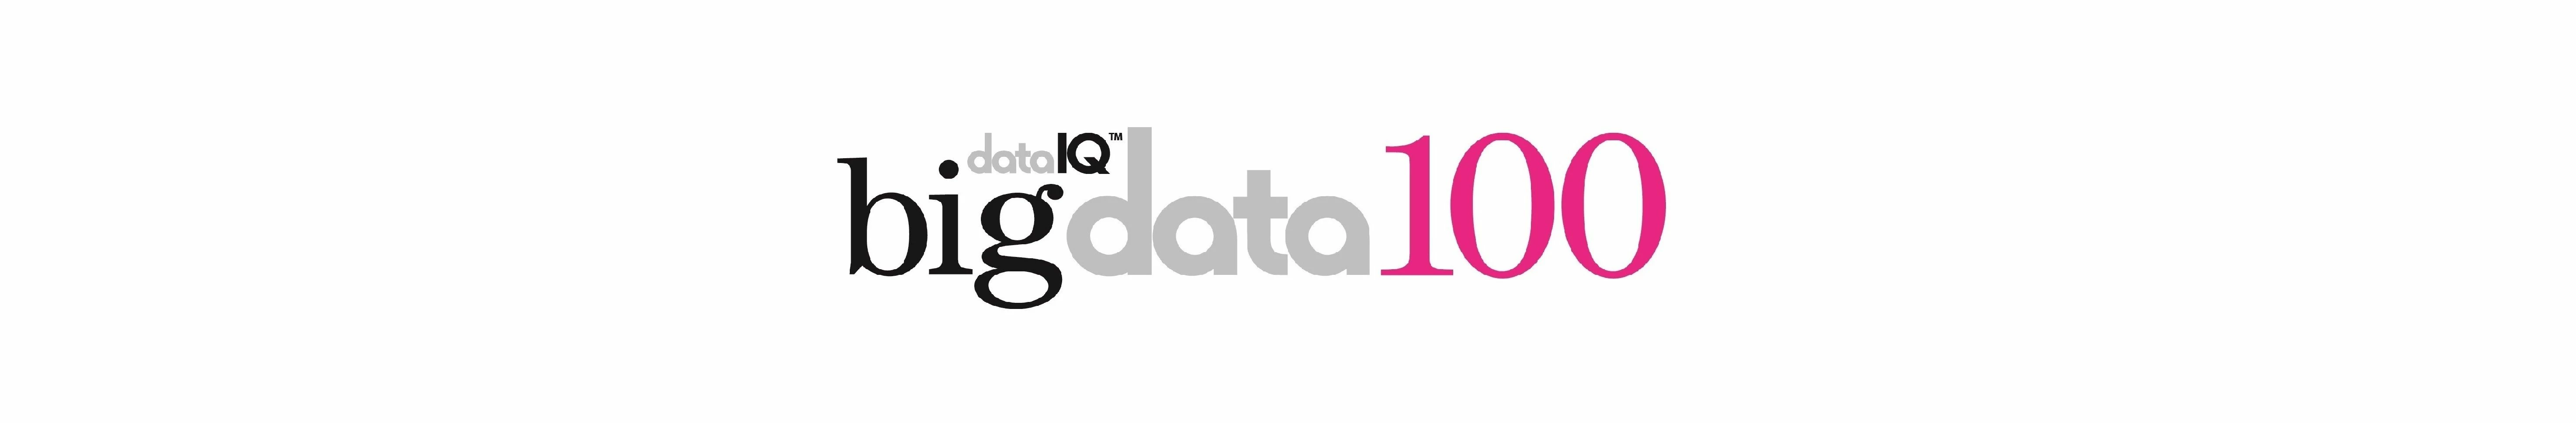 Data IQ Big Data 100